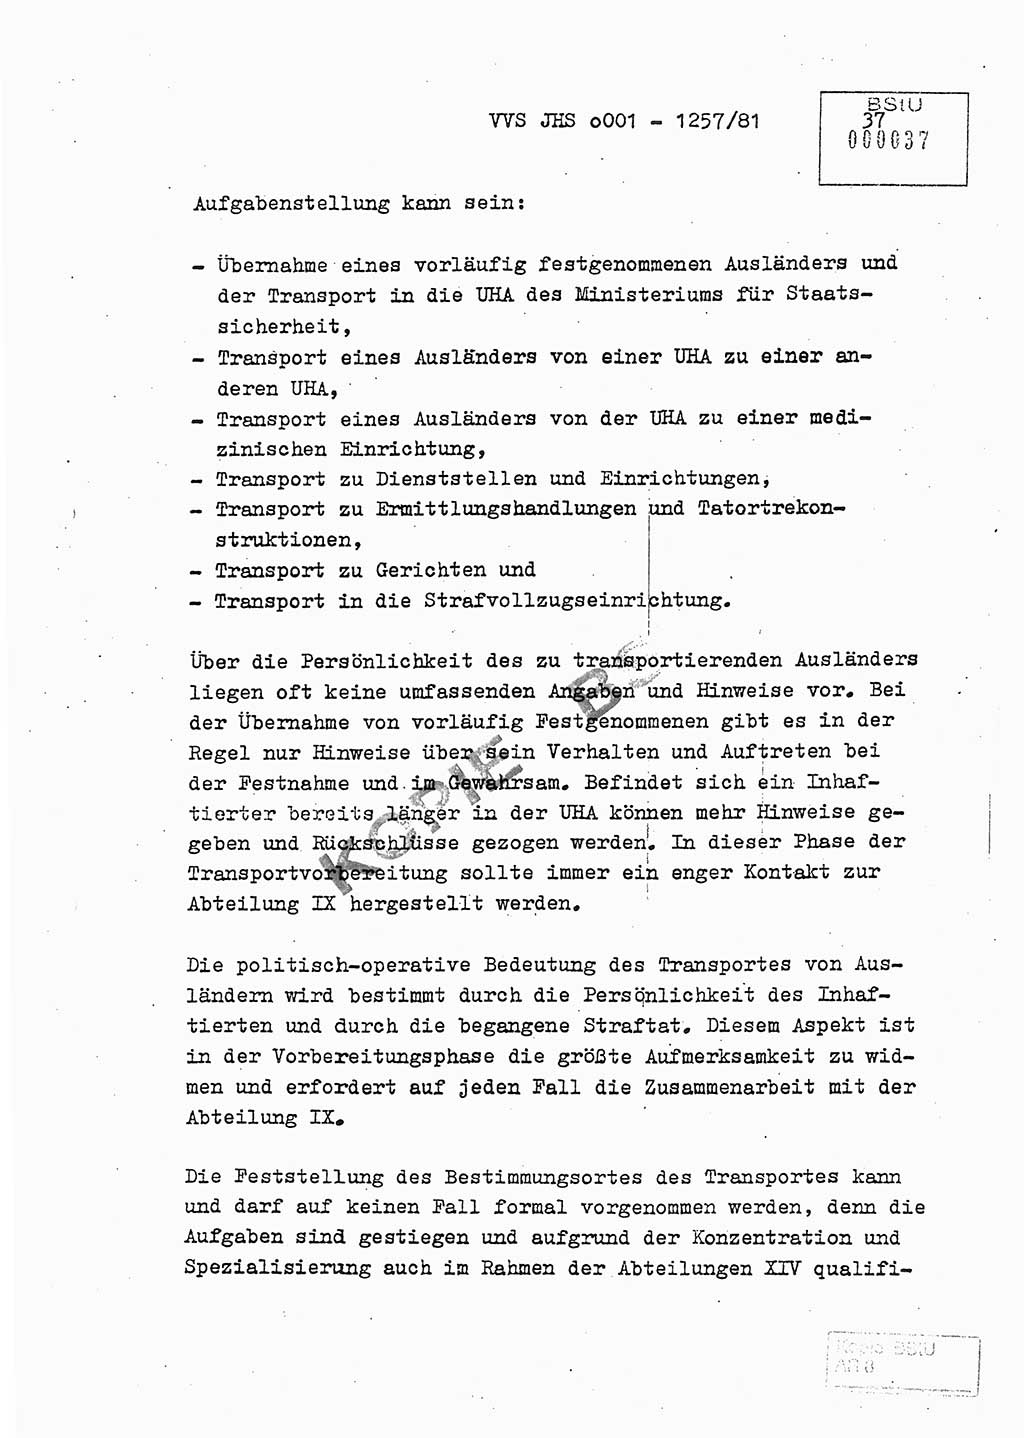 Fachschulabschlußarbeit Unterleutnant Dieter Möller (BV Rst. Abt. ⅩⅣ), Ministerium für Staatssicherheit (MfS) [Deutsche Demokratische Republik (DDR)], Juristische Hochschule (JHS), Vertrauliche Verschlußsache (VVS) o001-1257/81, Potsdam 1982, Seite 37 (FS-Abschl.-Arb. MfS DDR JHS VVS o001-1257/81 1982, S. 37)